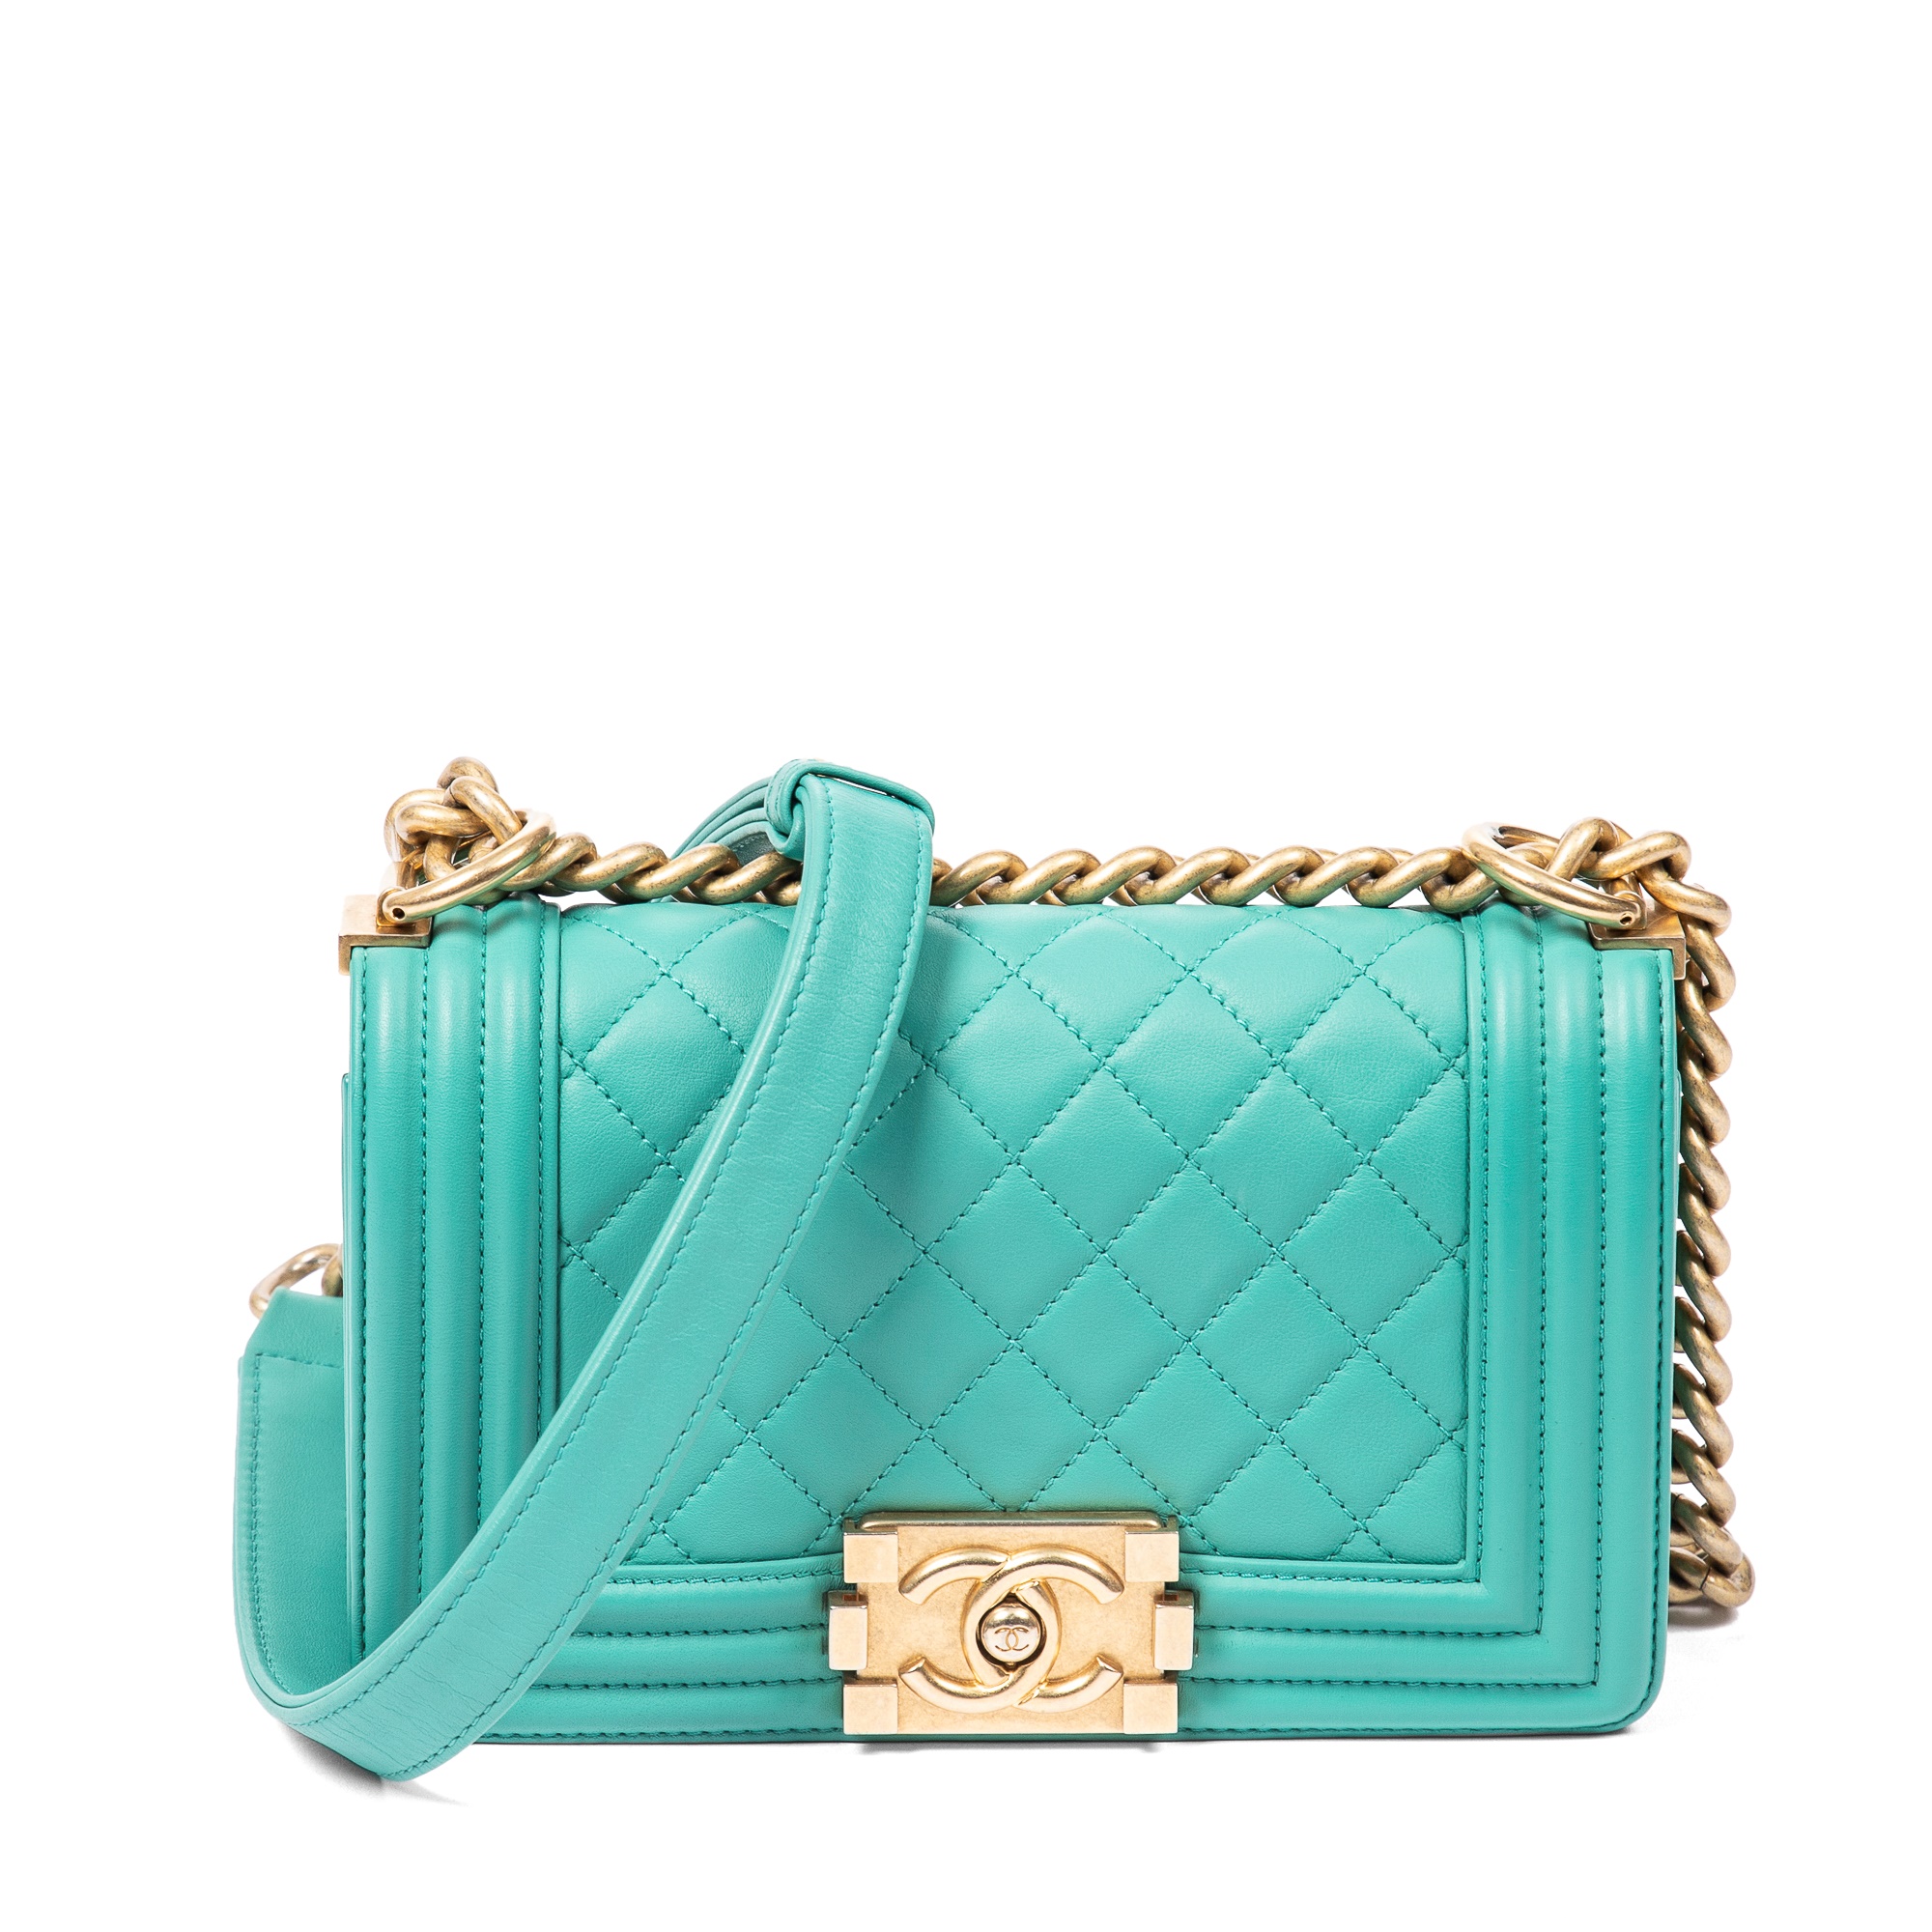 Sold at Auction: Paris Edinburgh Double Flap Chanel Purse Tri Color